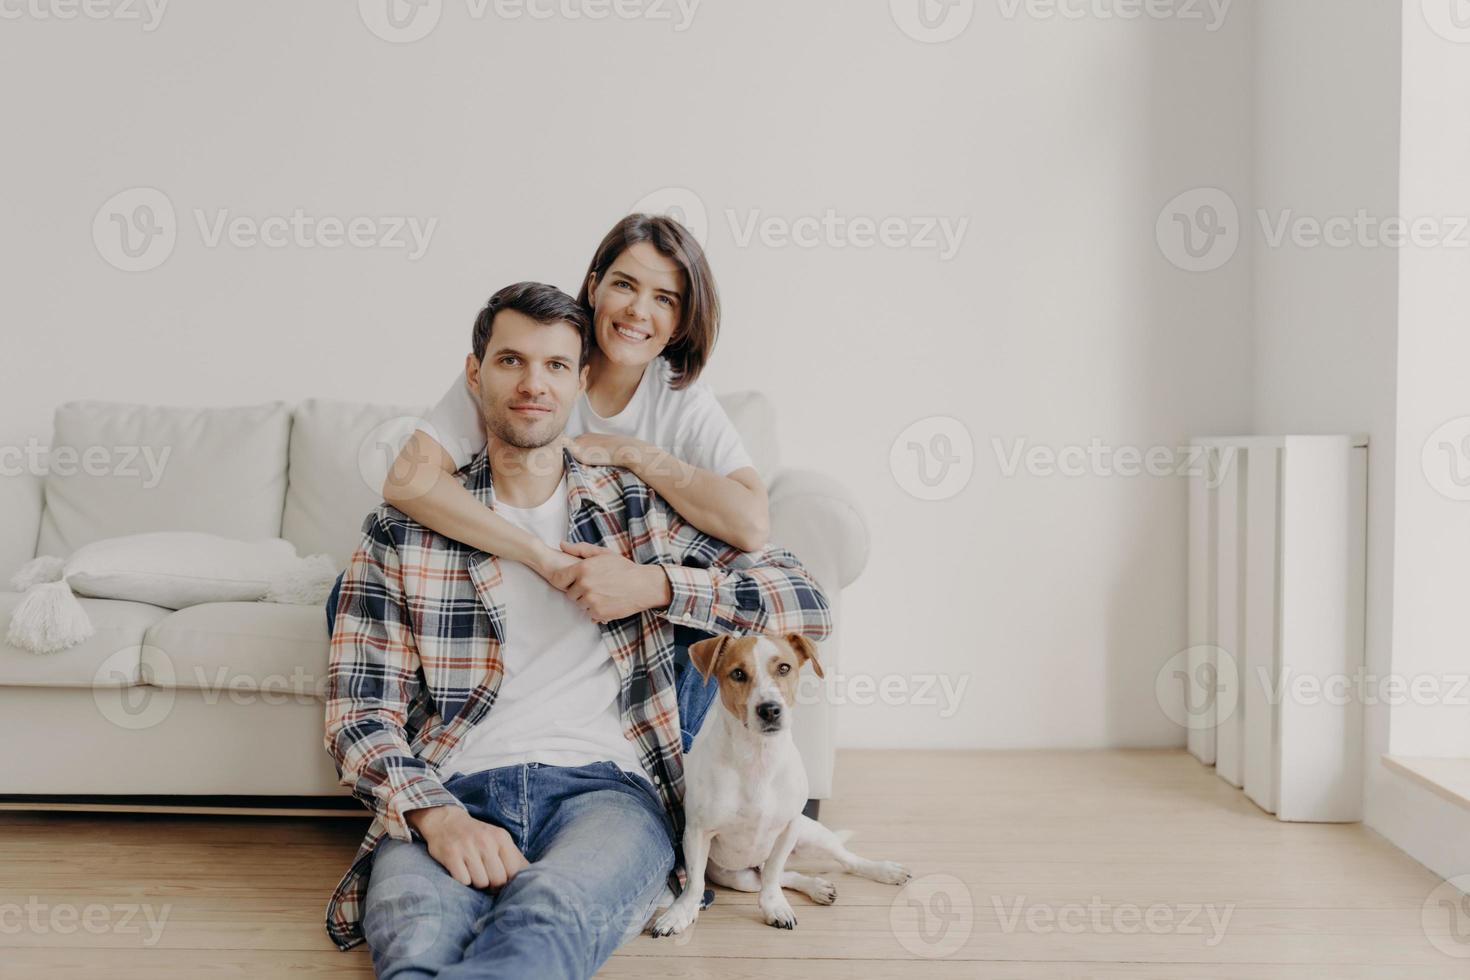 retrato de esposa afetuosa abraça marido que se senta no chão perto do sofá, seu animal de estimação favorito posa para a câmera, faz foto, estando em casa, compra apartamento novo, posa na sala de estar com paredes brancas foto